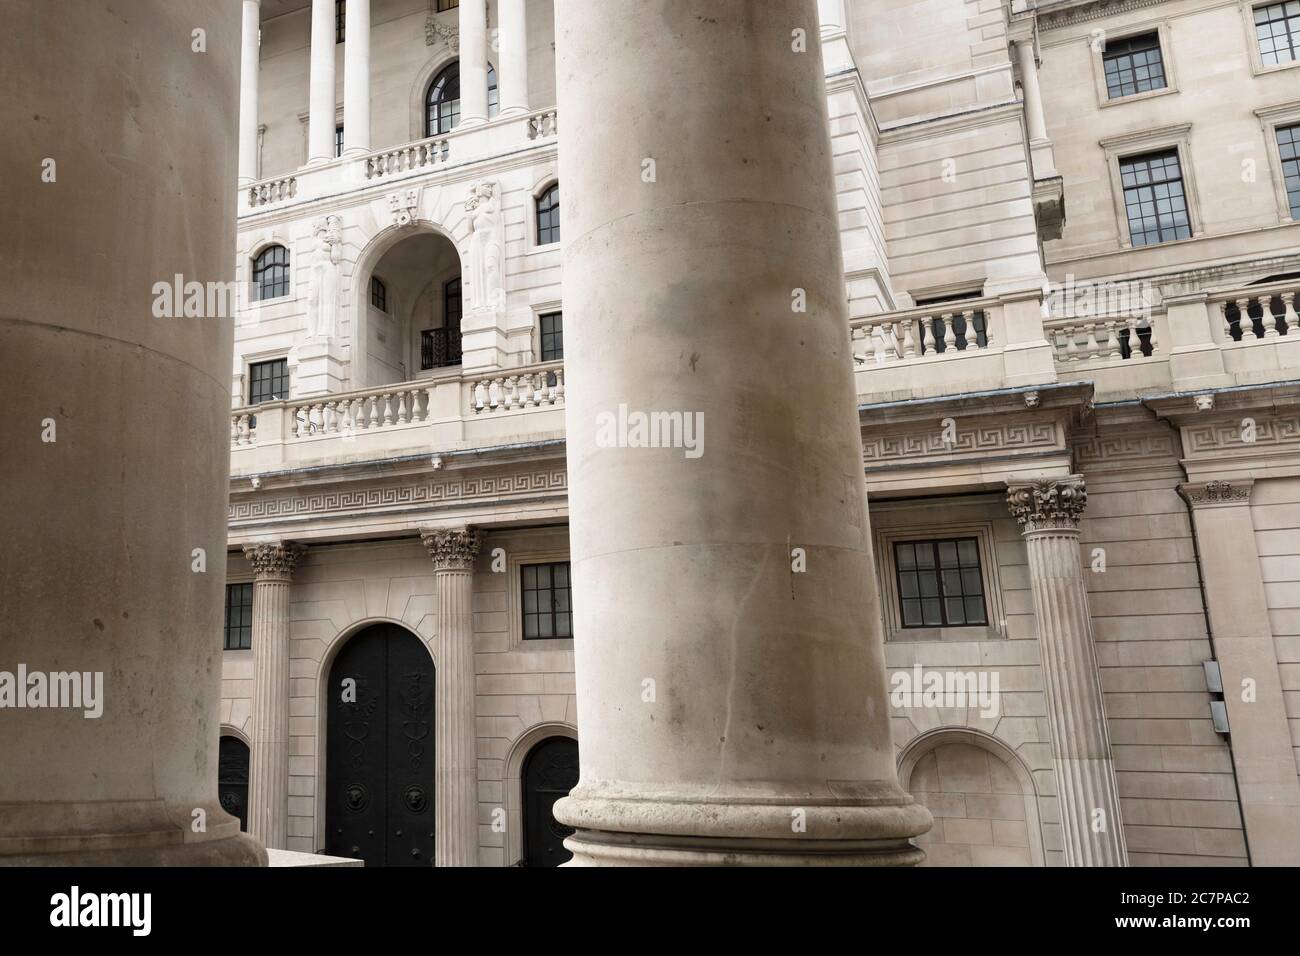 La Banque d'Angleterre est la banque centrale du Royaume-Uni. Parfois connue sous le nom de « Vieille Dame » de Threadneedle Street ». Threadneedle Street, Londres, Royaume-Uni 18 mars 2017 Banque D'Images